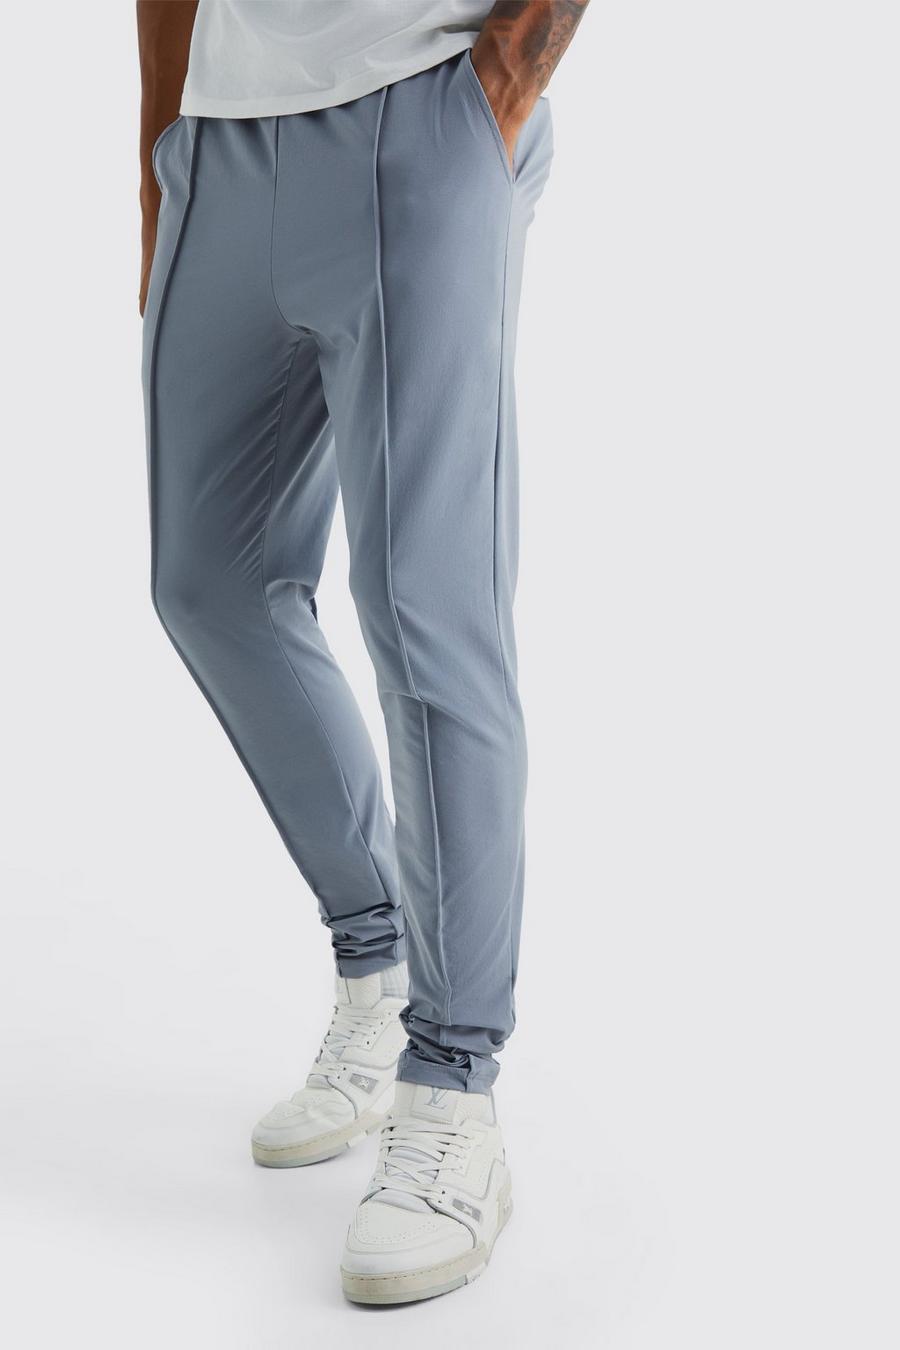 Pantaloni Tall in Stretch leggero elasticizzato con nervature, Light grey